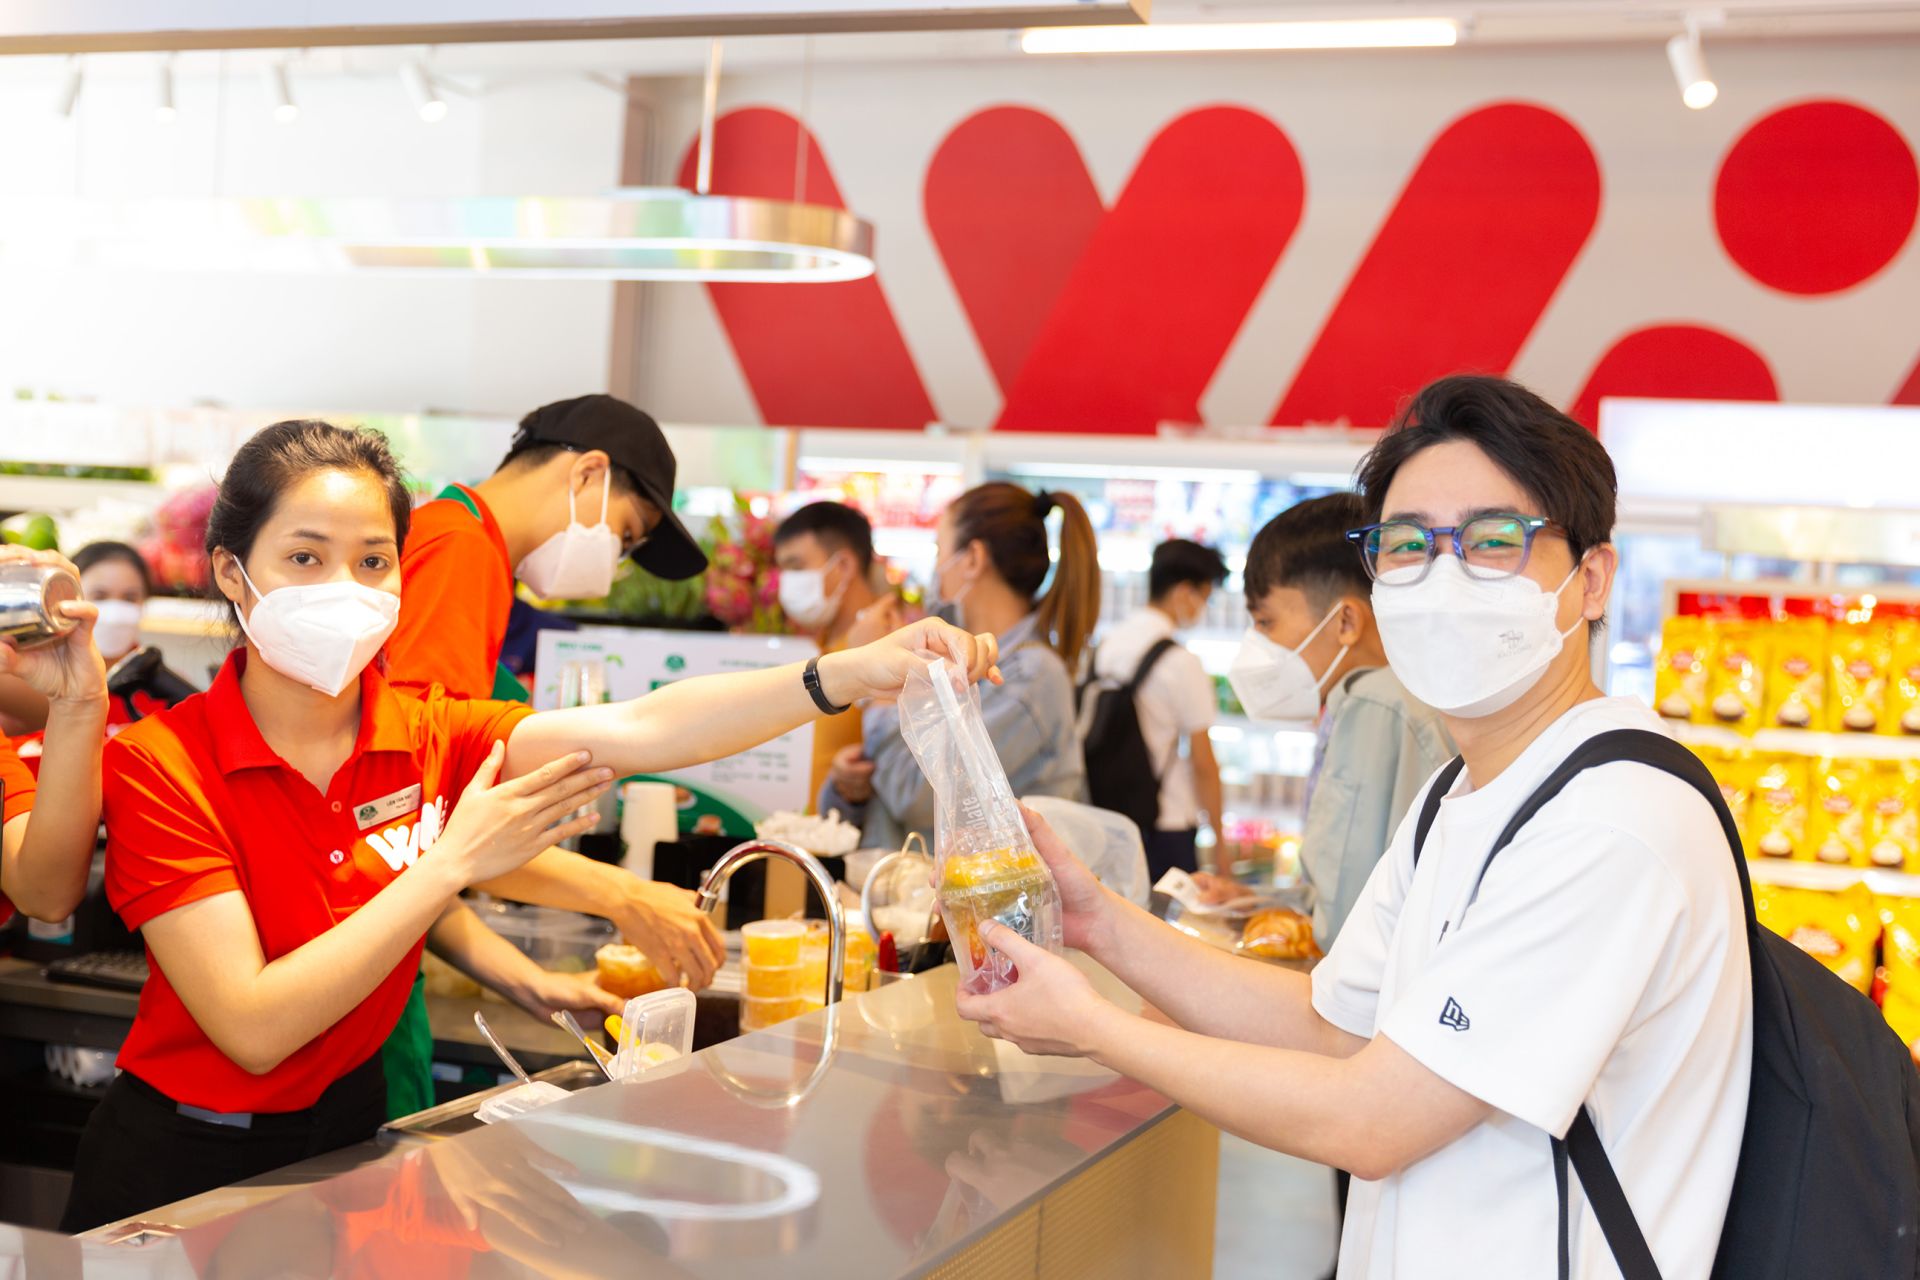 27 cửa hàng WIN được đưa vào hoạt động ở các vị trí đắc địa tại Hà Nội và Tp. Hồ Chí Minh